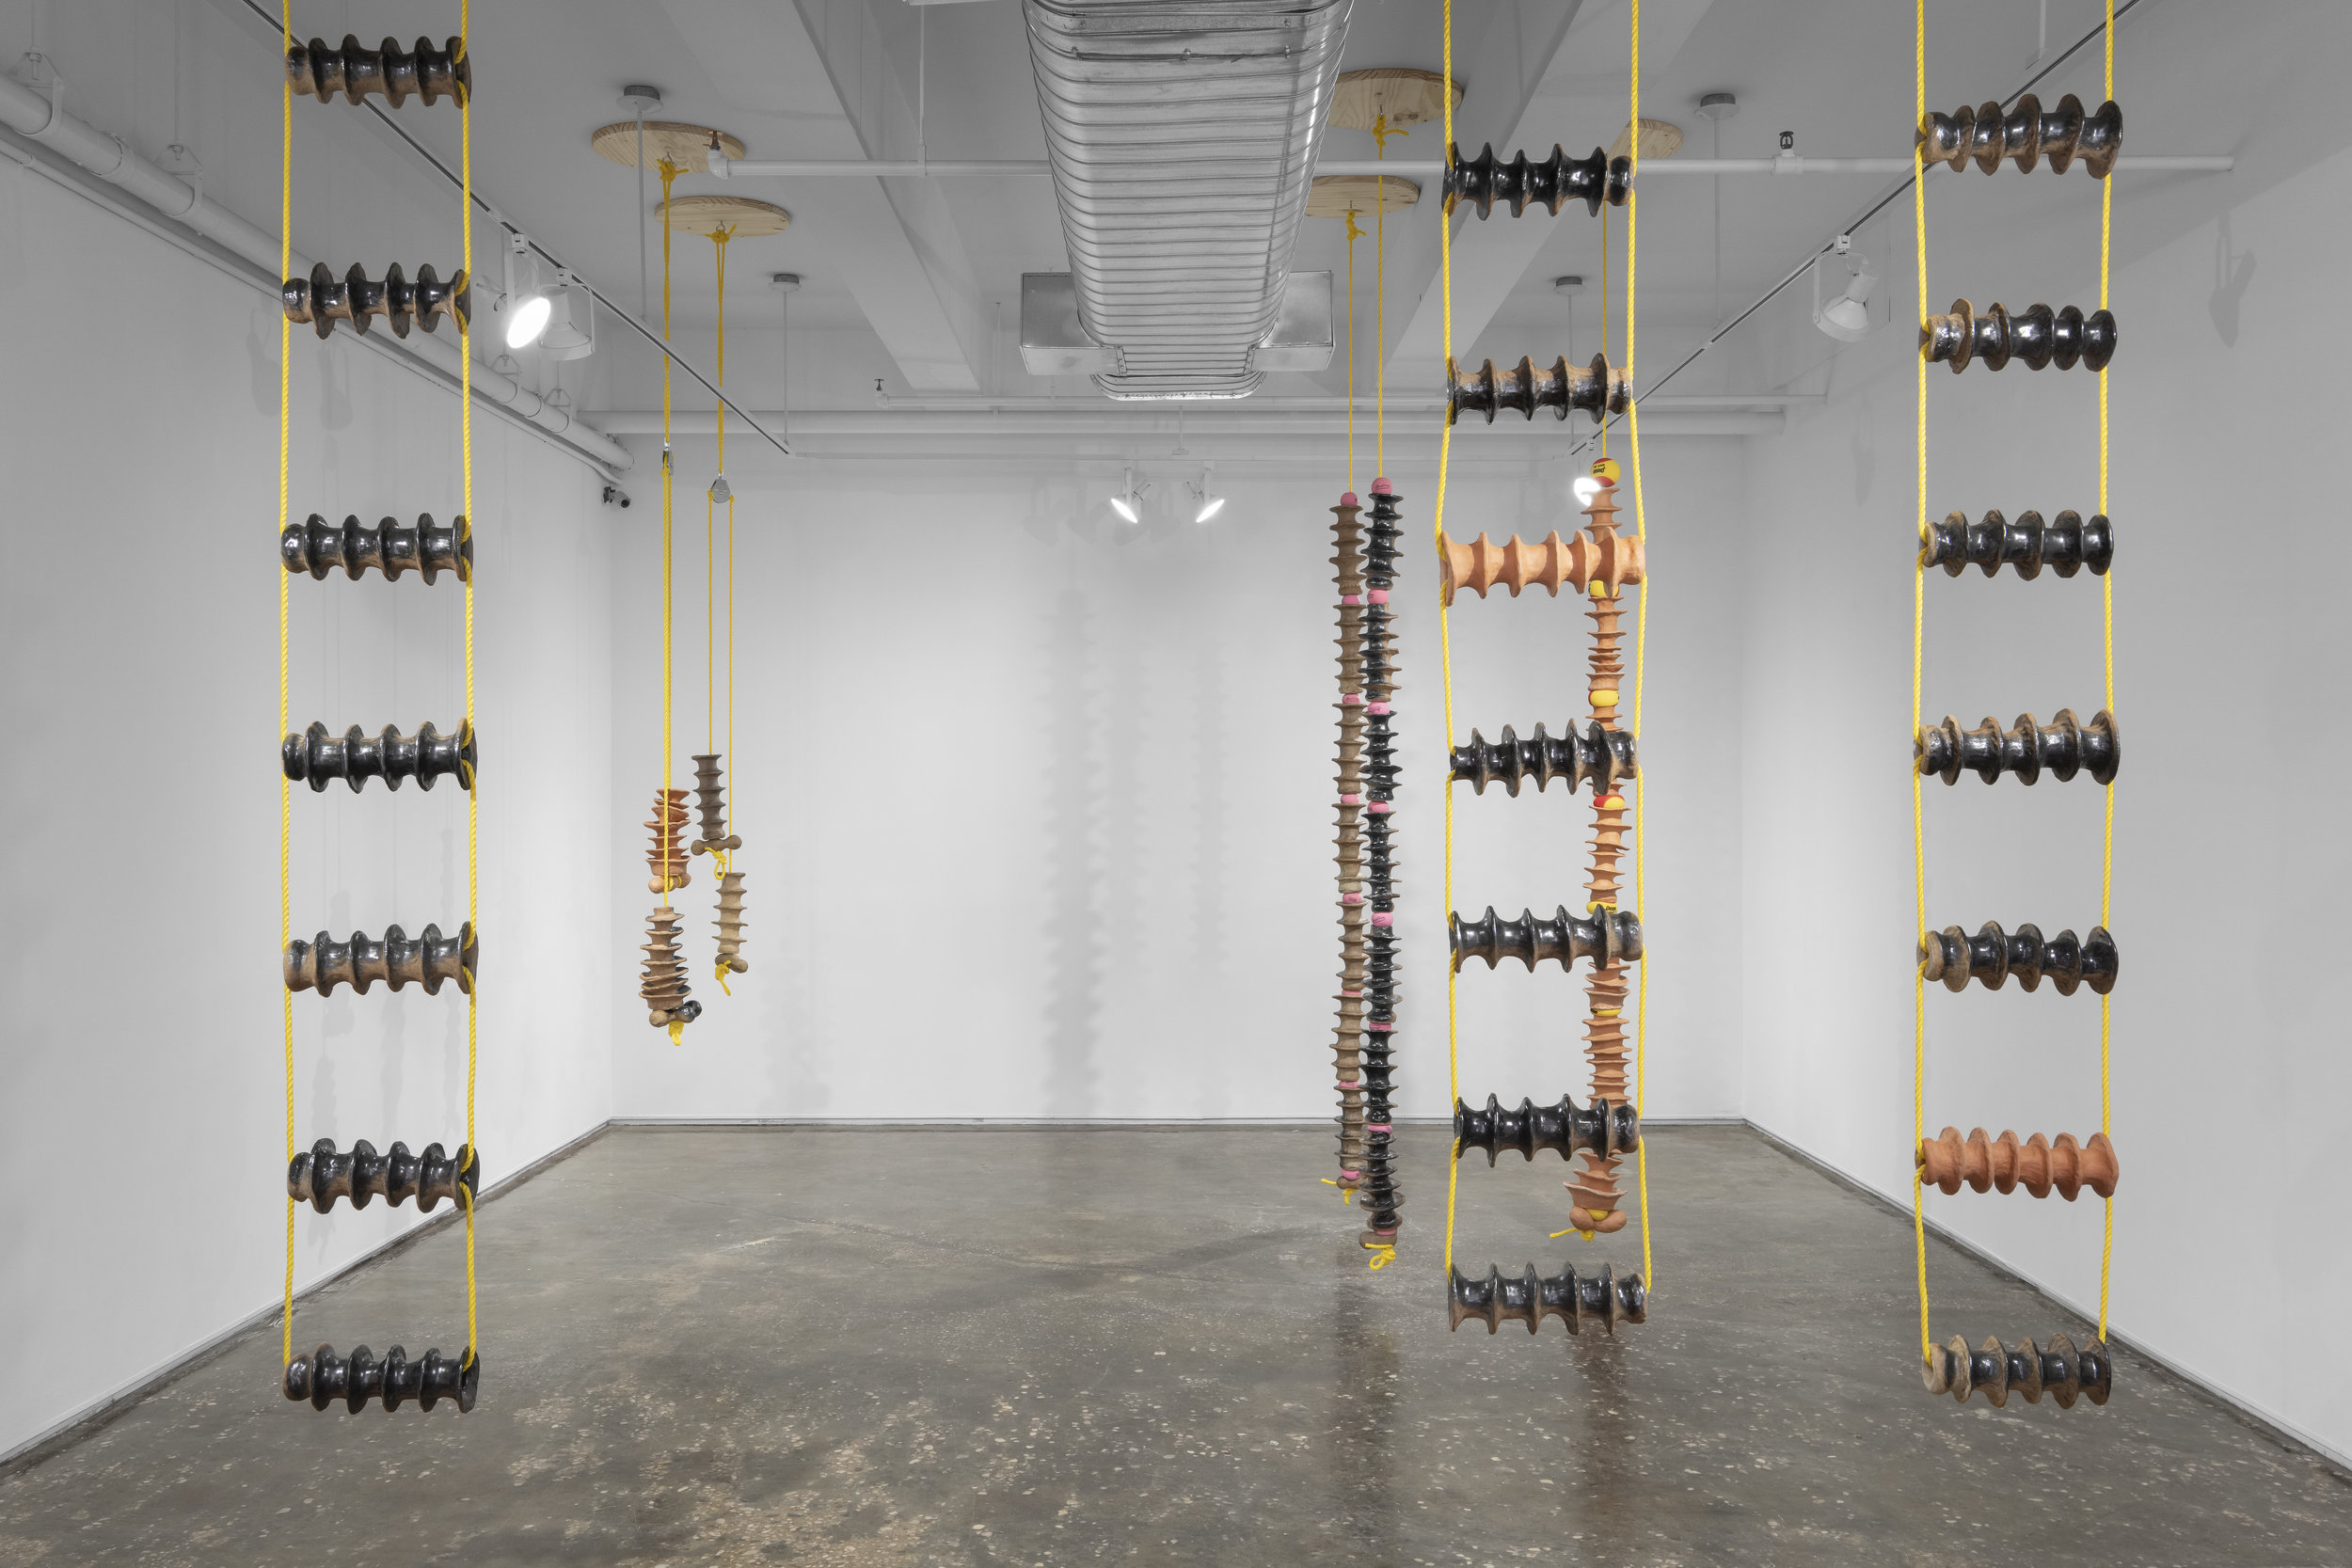 Sylvia Netzer, Virtebrae installation shot by Sebastian Bach